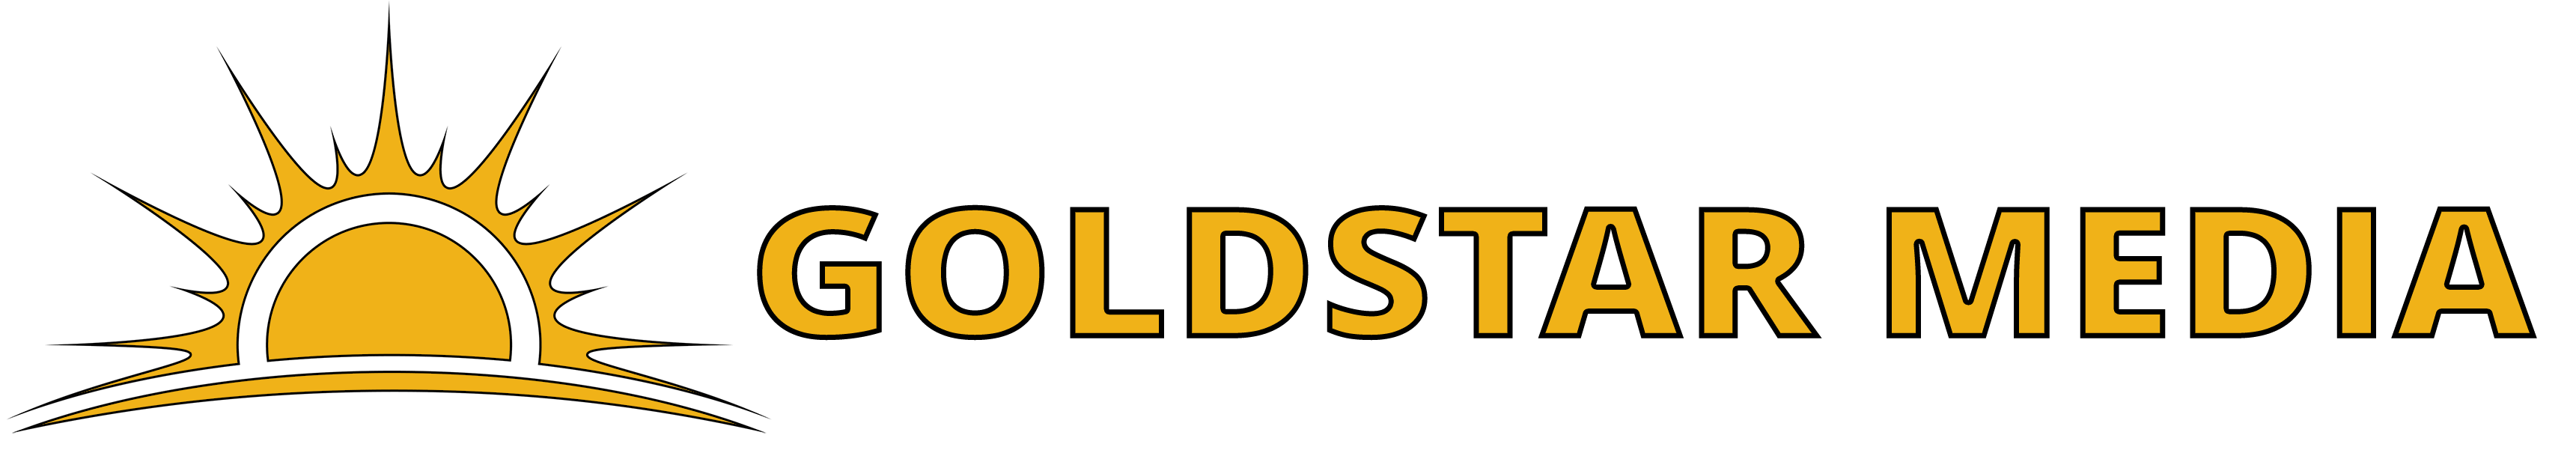 GoldStar Media LLC